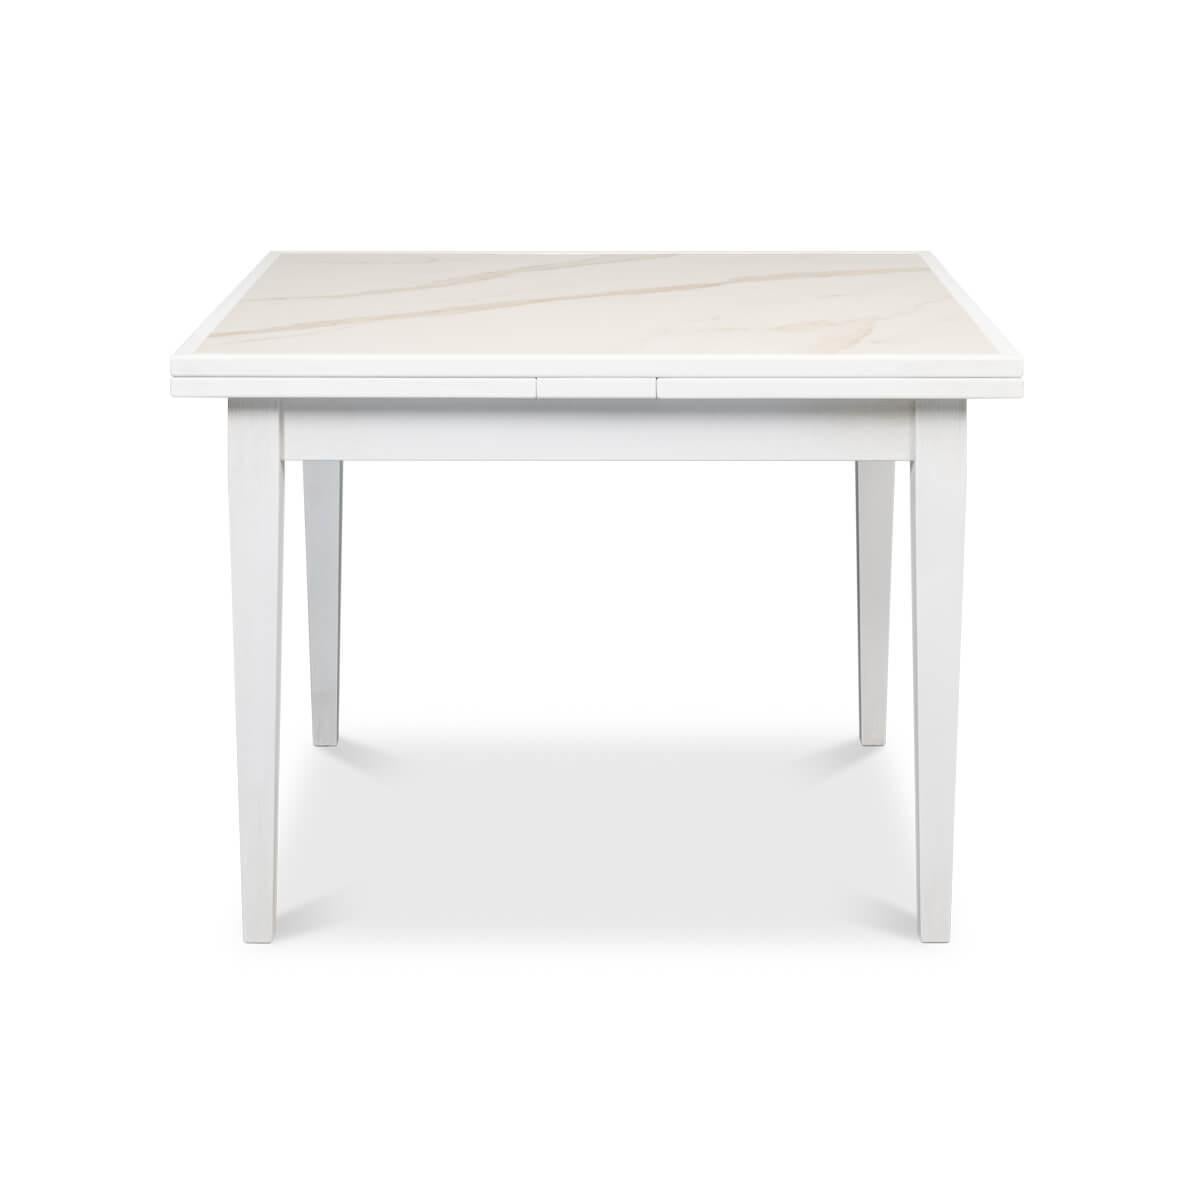 Ein Tisch mit ausziehbarer Platte im italienischen Stil lässt sich von einem quadratischen 41-Zoll-Spieltisch in einen größeren 76-Zoll-Esstisch verwandeln. Dieser einzigartige Tisch hat eine marmorierte Porzellaneinlage auf jeder Platte und bietet